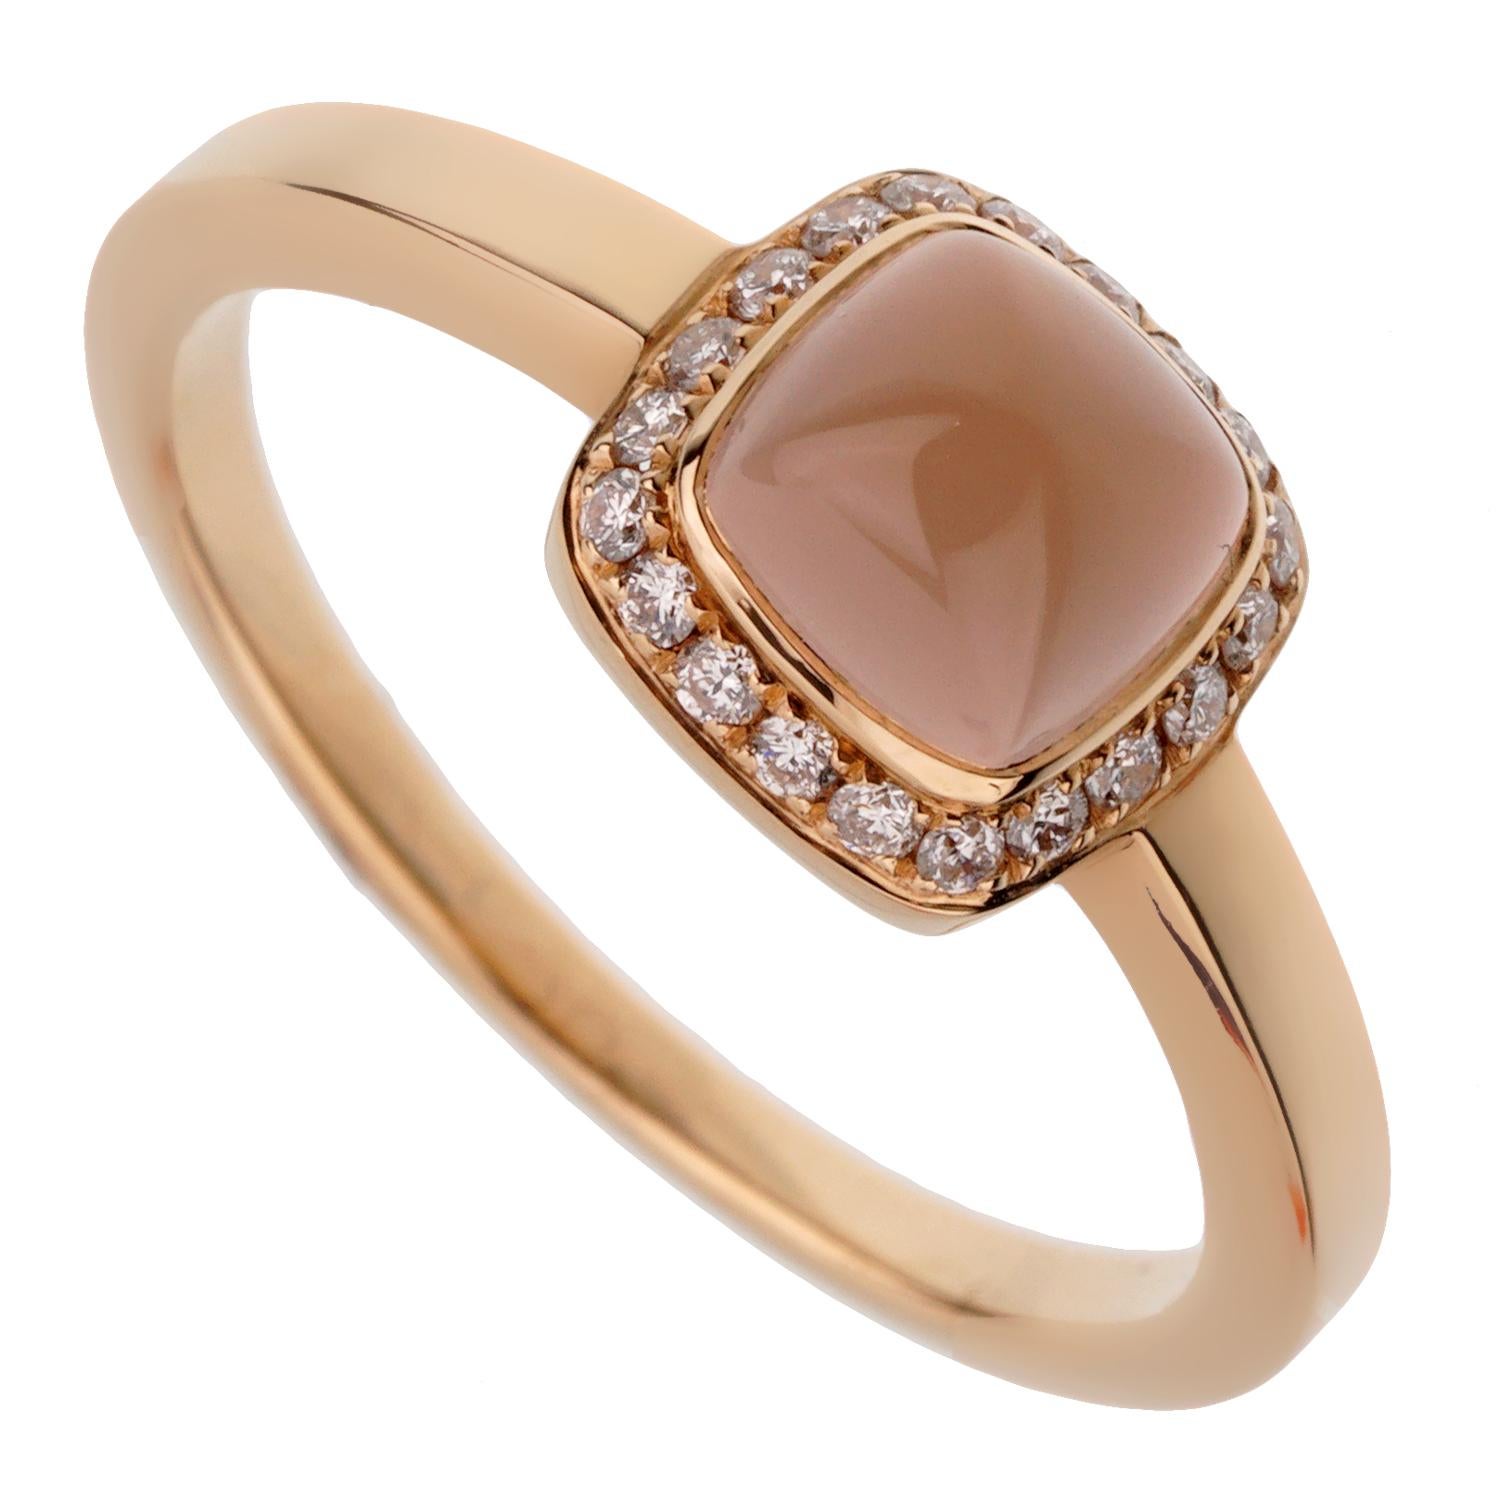 Ein fabelhafter, brandneuer Ring von Fred of Paris mit einem Rosenquarz, der mit runden Diamanten im Brillantschliff in schimmerndem 18 Karat Roségold verziert ist. Der Ring hat die Größe 4 3/4 und kann bei Bedarf in der Größe angepasst werden.